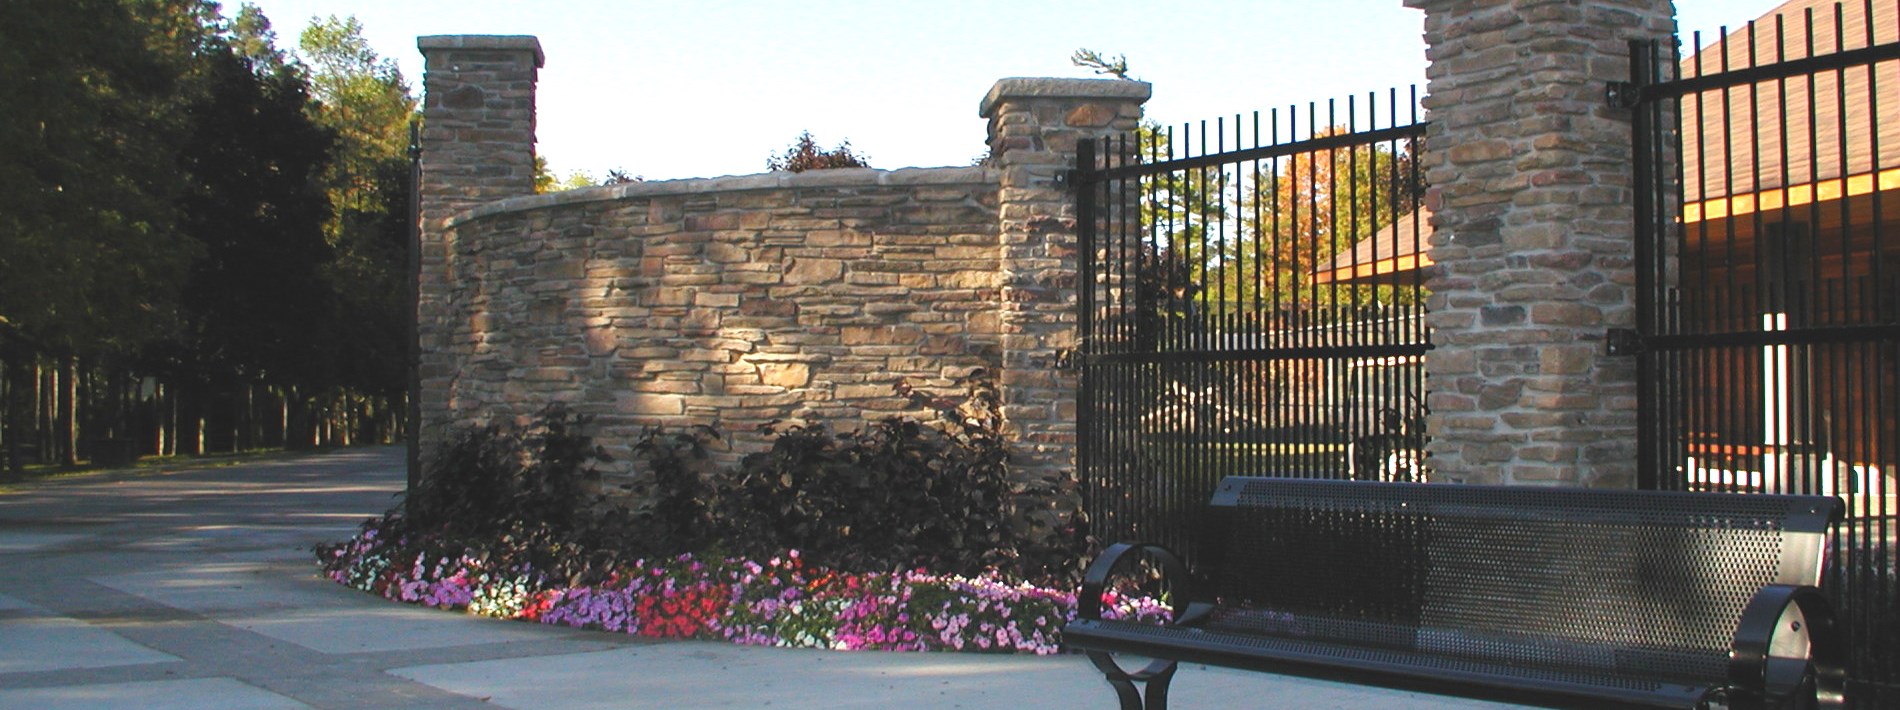 Zoo Entrance Garden